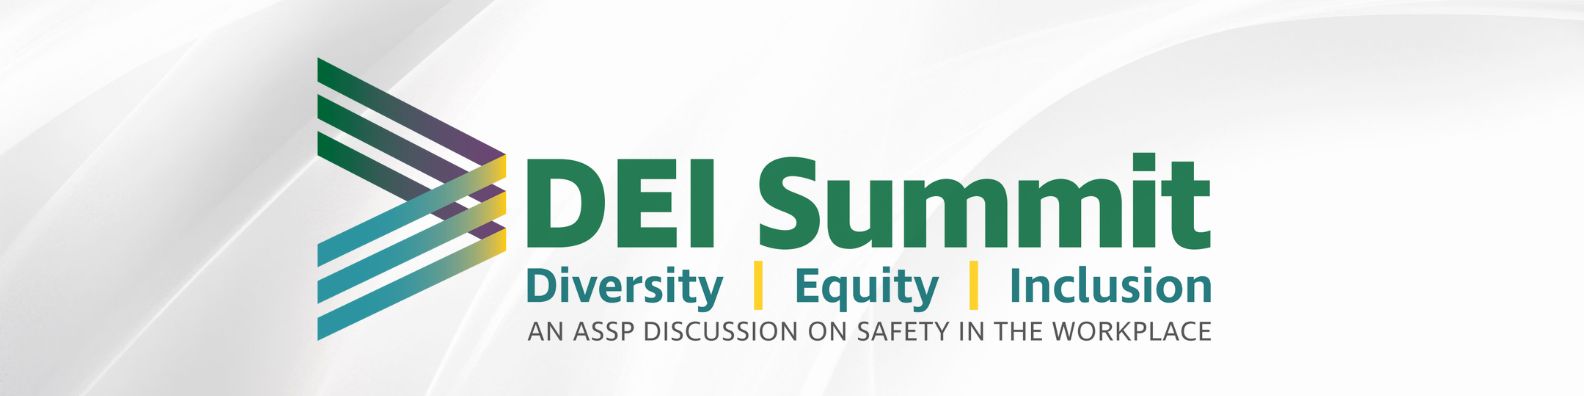 ASSP DEI Summit logo